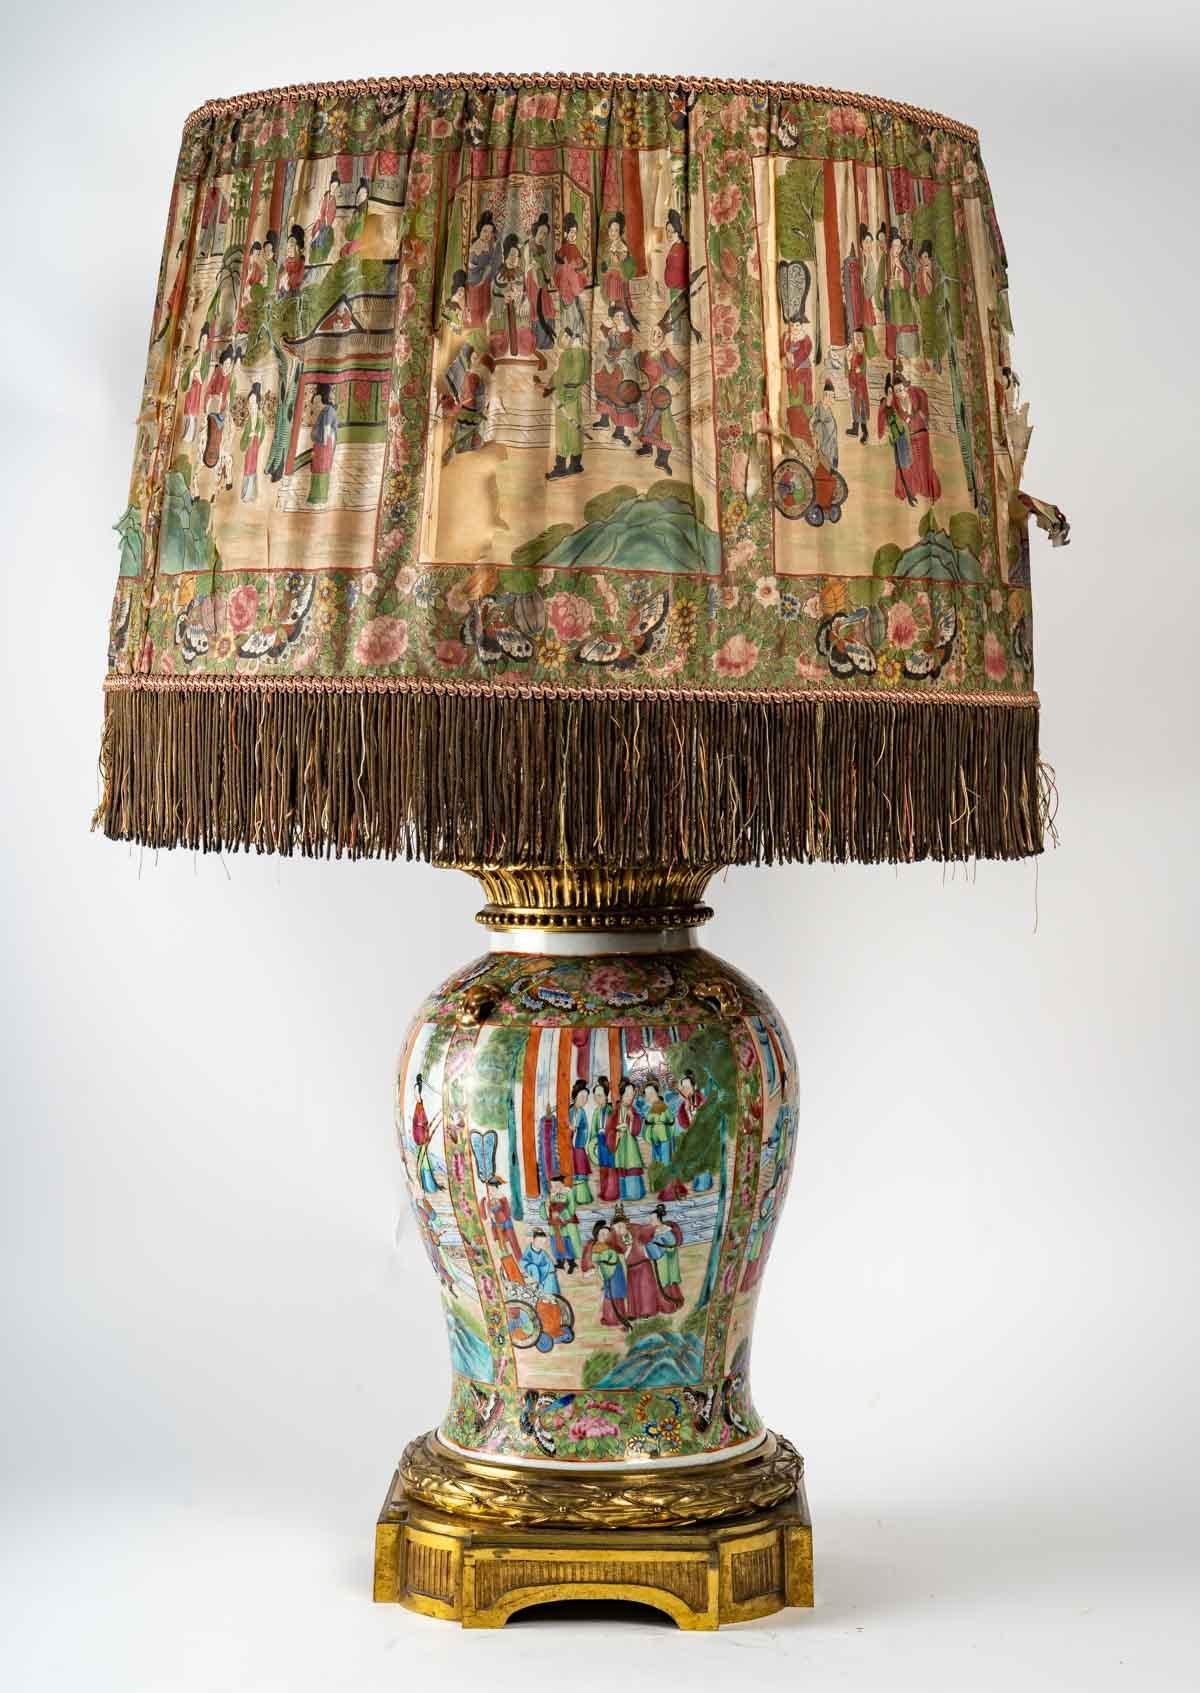 Très importante lampe en porcelaine de Satsuma, montée en bronze doré et abat-jour en soie (très endommagé, mais historique), 19ème siècle, période Napoléon III, Grande décoration.
Mesures : H : 95 cm, P : 55 cm.